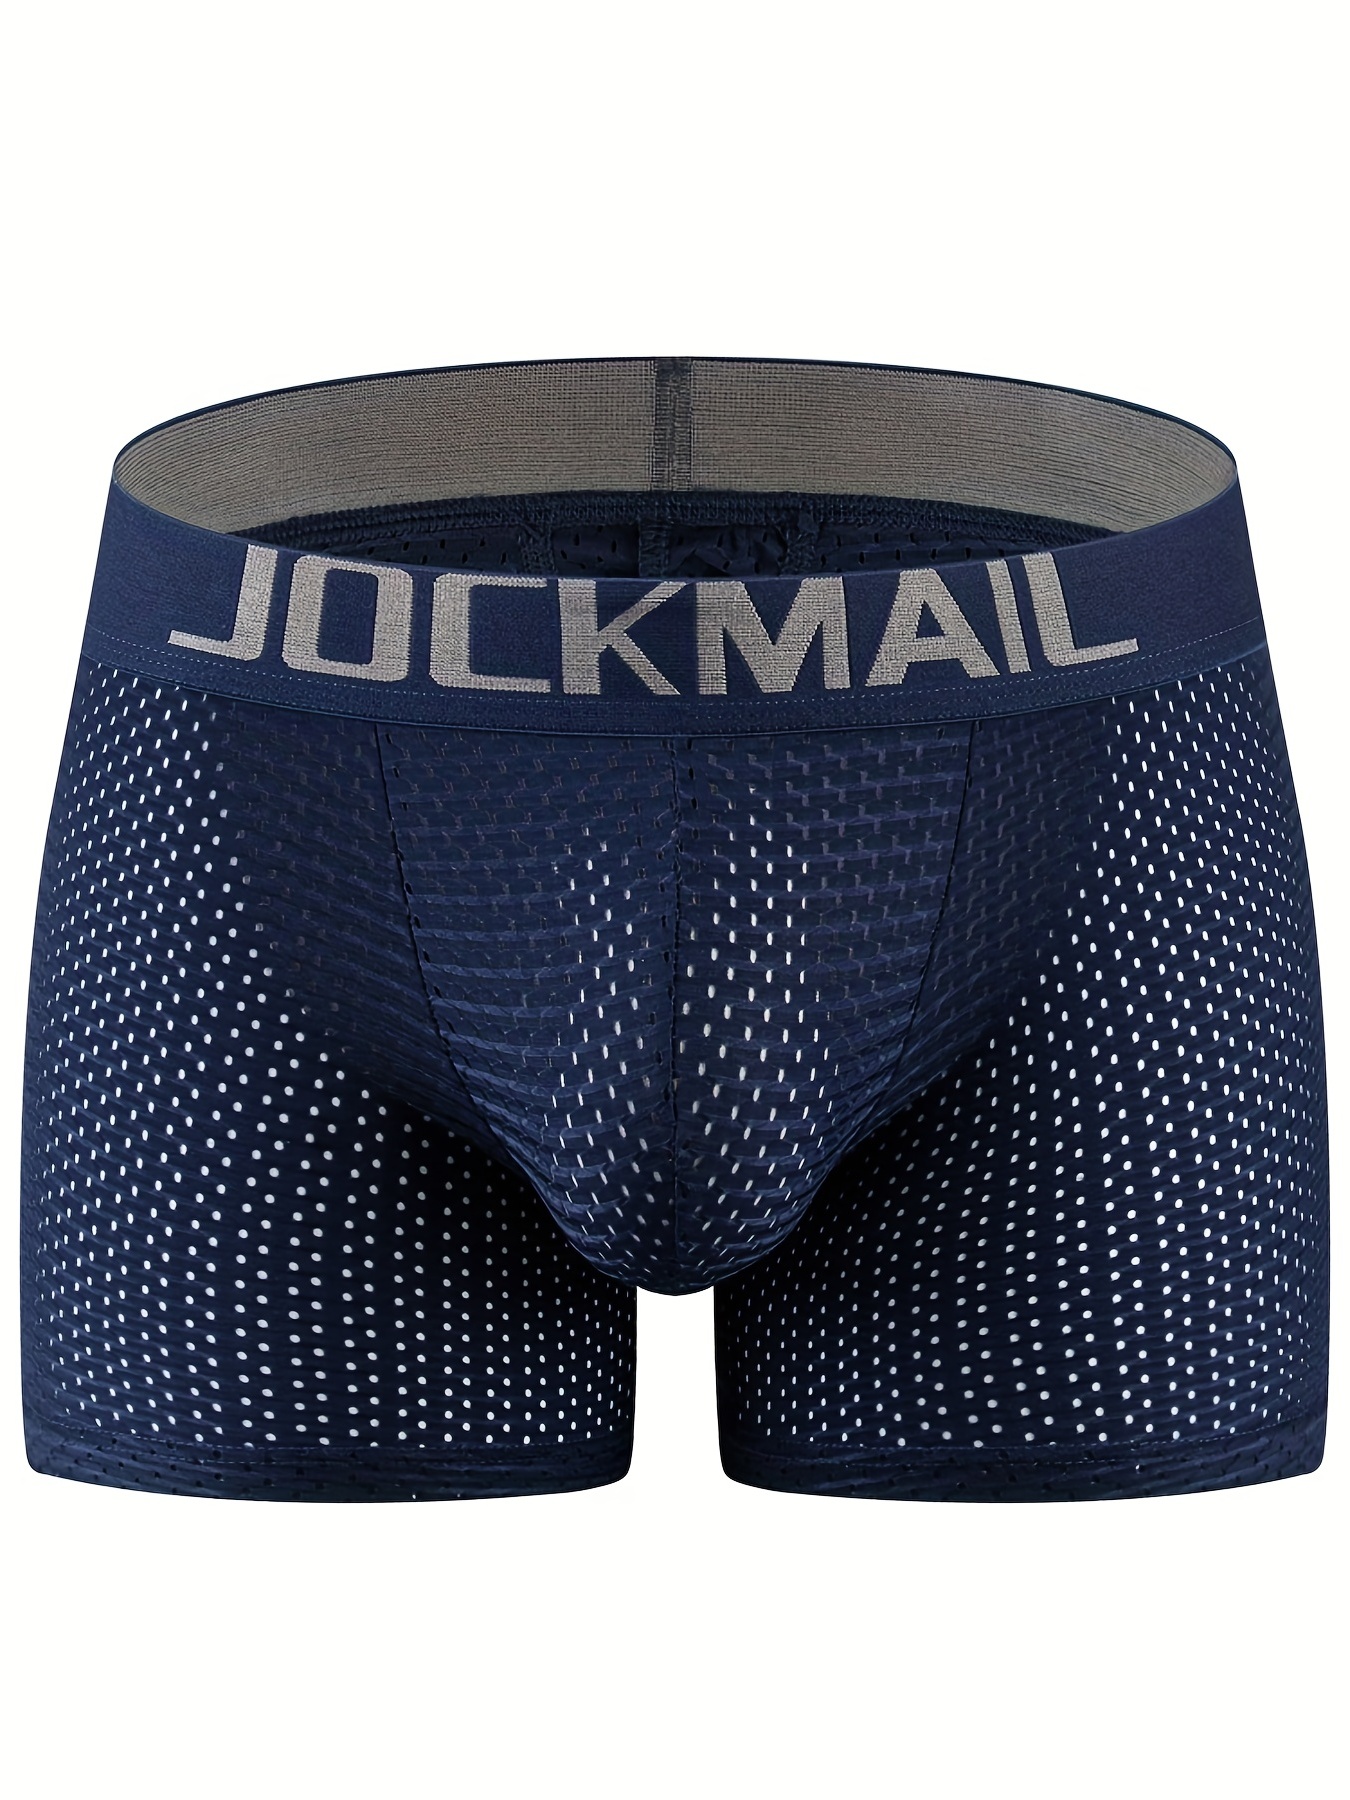 JOCKMAIL 3PCS/PACKS Men Underwear Briefs Cotton Mens Briefs Low Waist Mens  Boxer Briefs (M, Black-White-Gray) at  Men's Clothing store